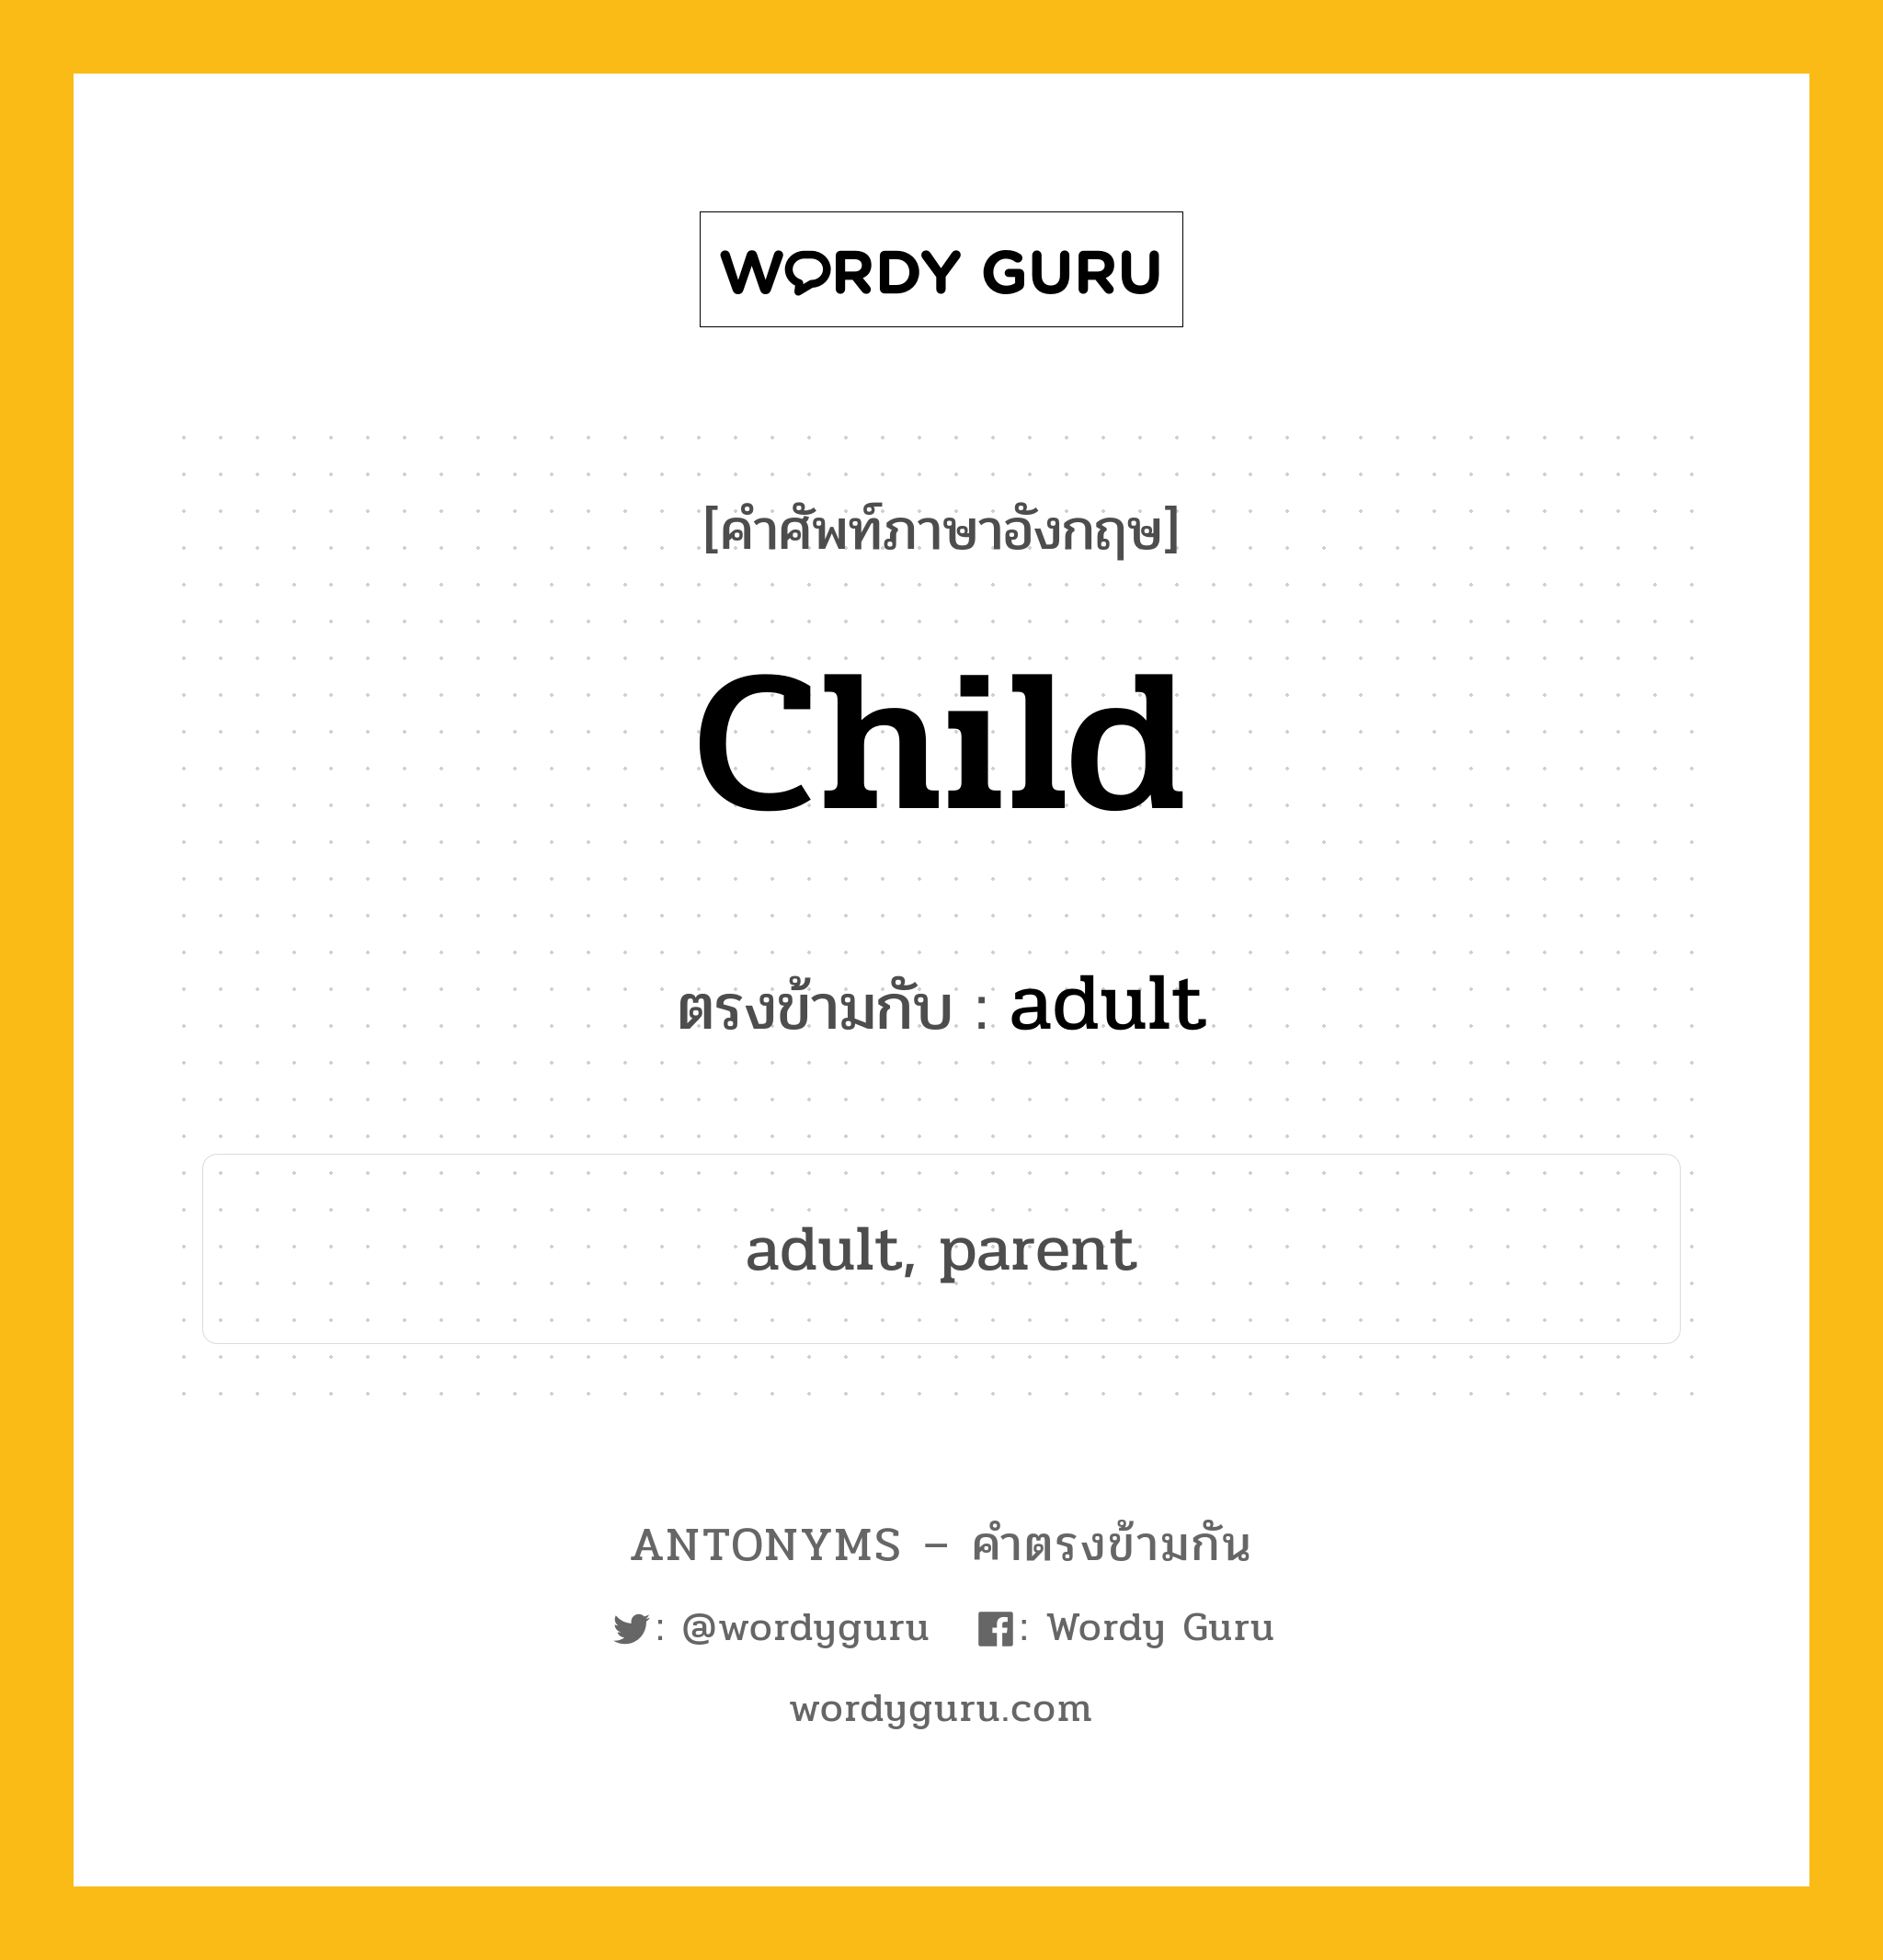 child เป็นคำตรงข้ามกับคำไหนบ้าง?, คำศัพท์ภาษาอังกฤษ child ตรงข้ามกับ adult หมวด adult